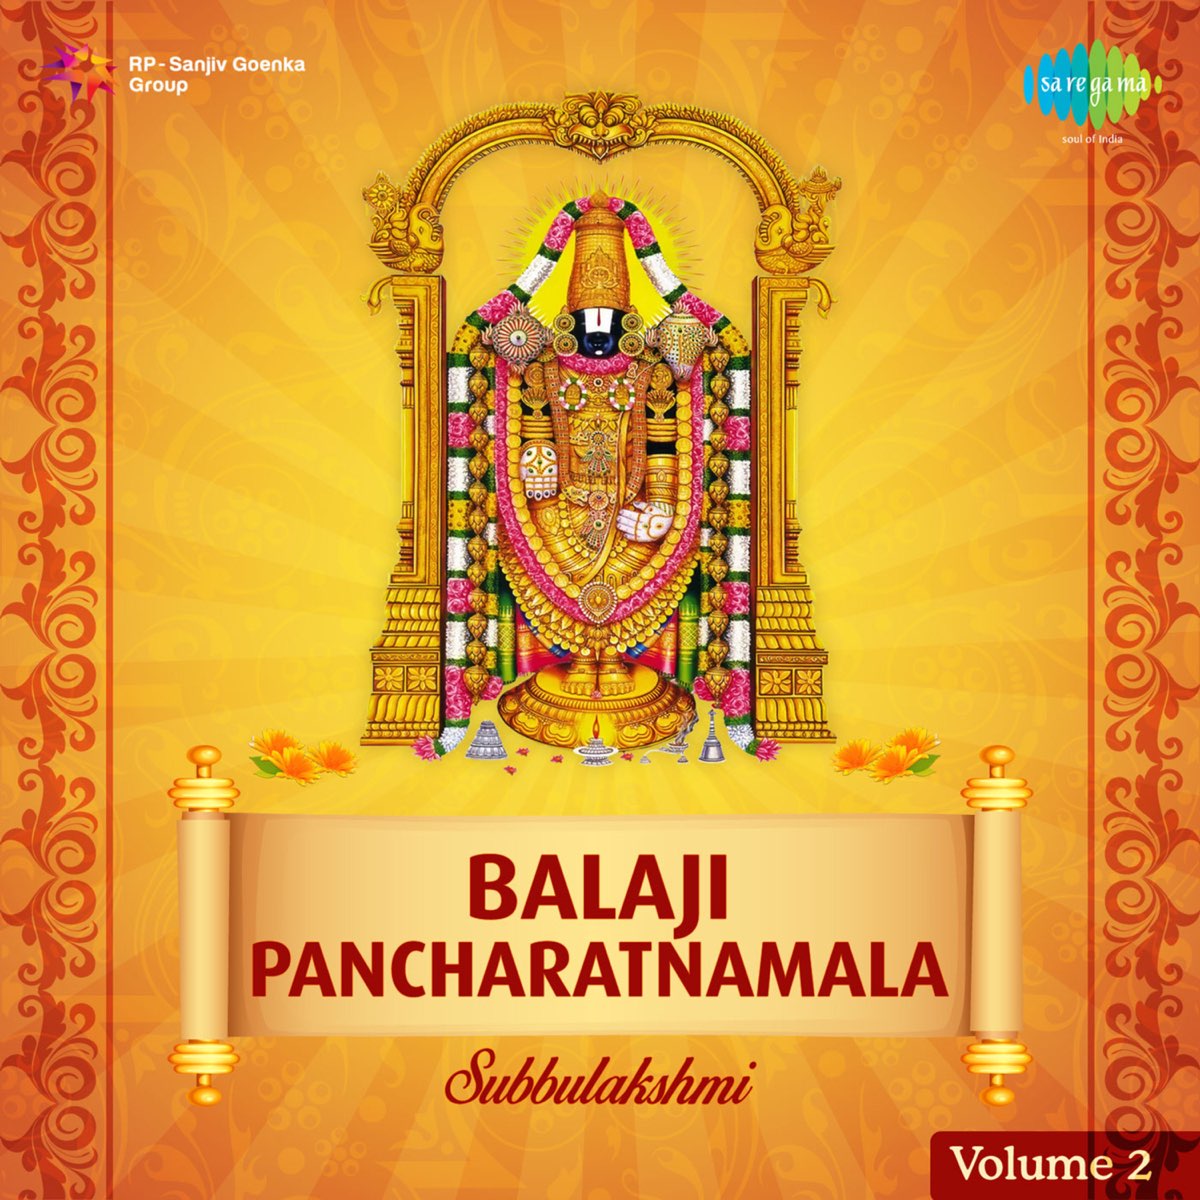 ‎Balaji Pancharatnamala, Vol. 2 Album by M. S. Subbulakshmi, Radha